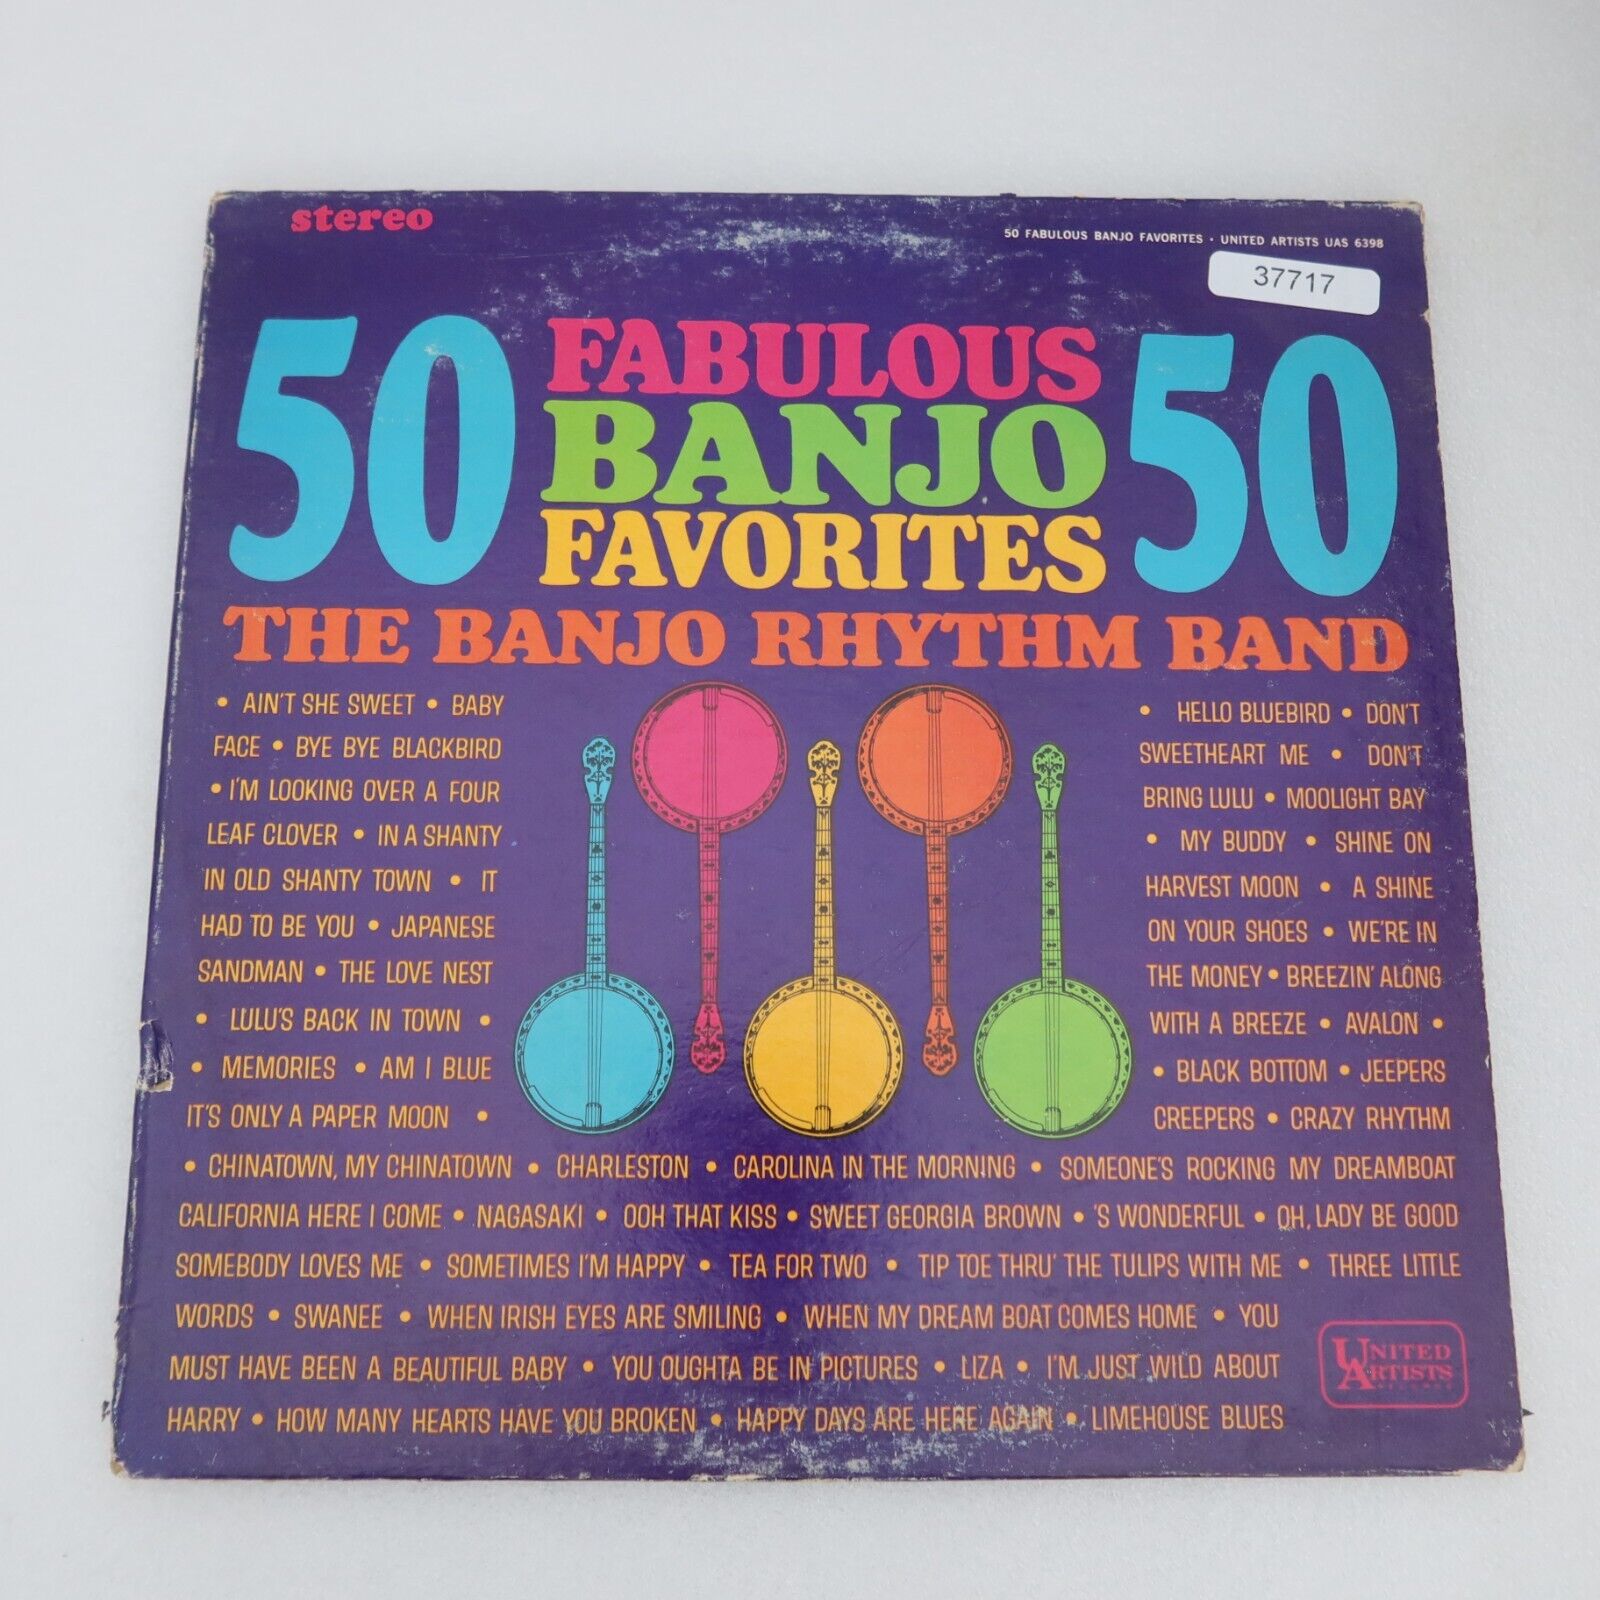 The Banjo Rhythm Band 50 Fabulous Banjo Favorites LP Vinyl Record Album